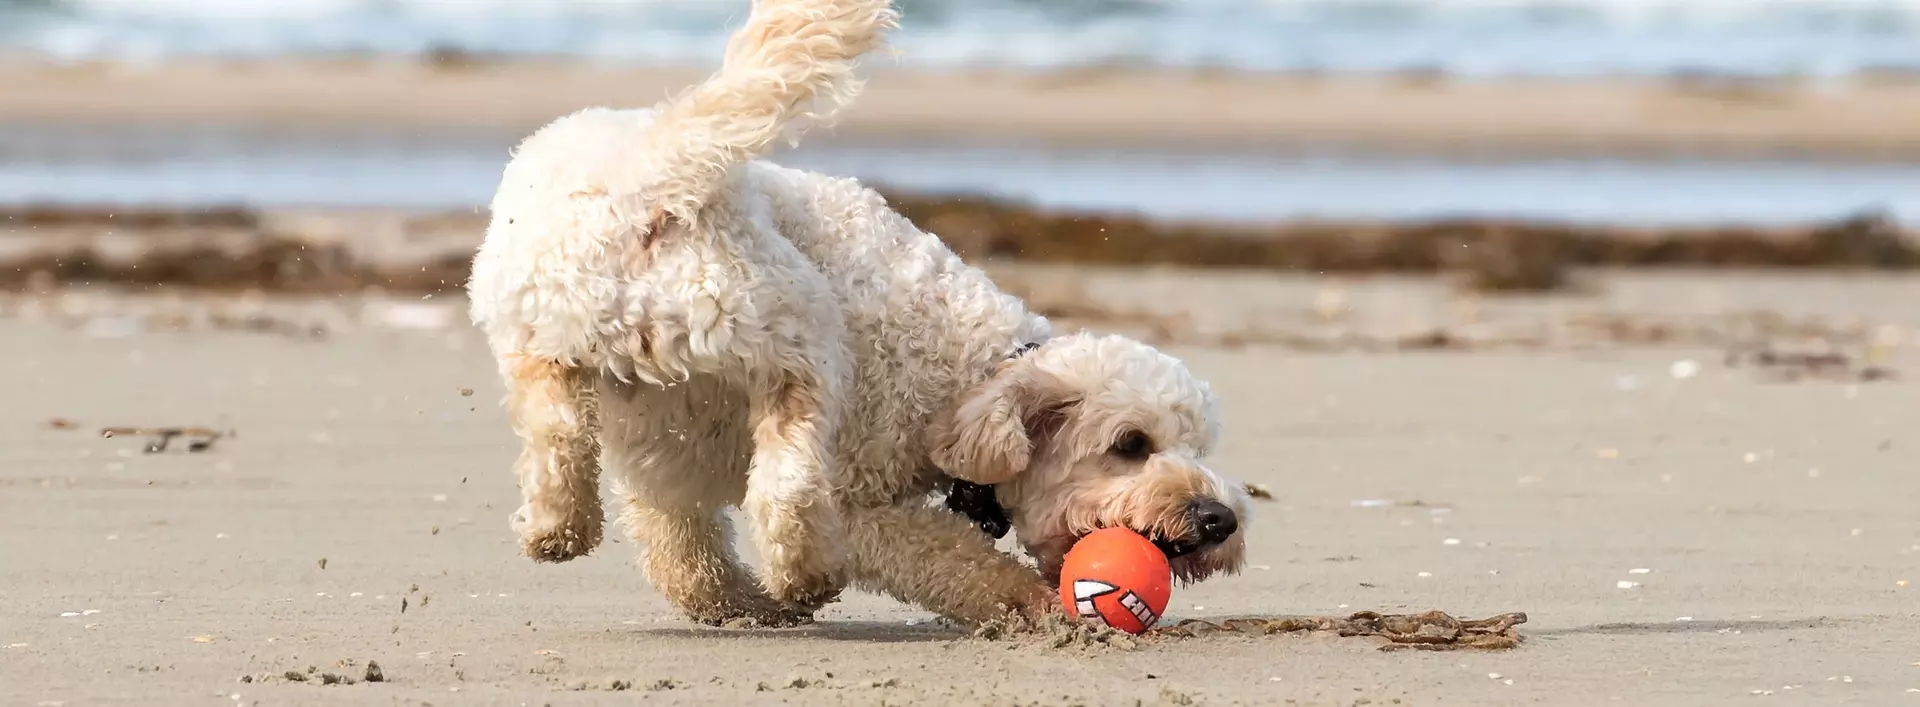 im Urlaub mit Hund an der Ostsee am Strand spielen und toben